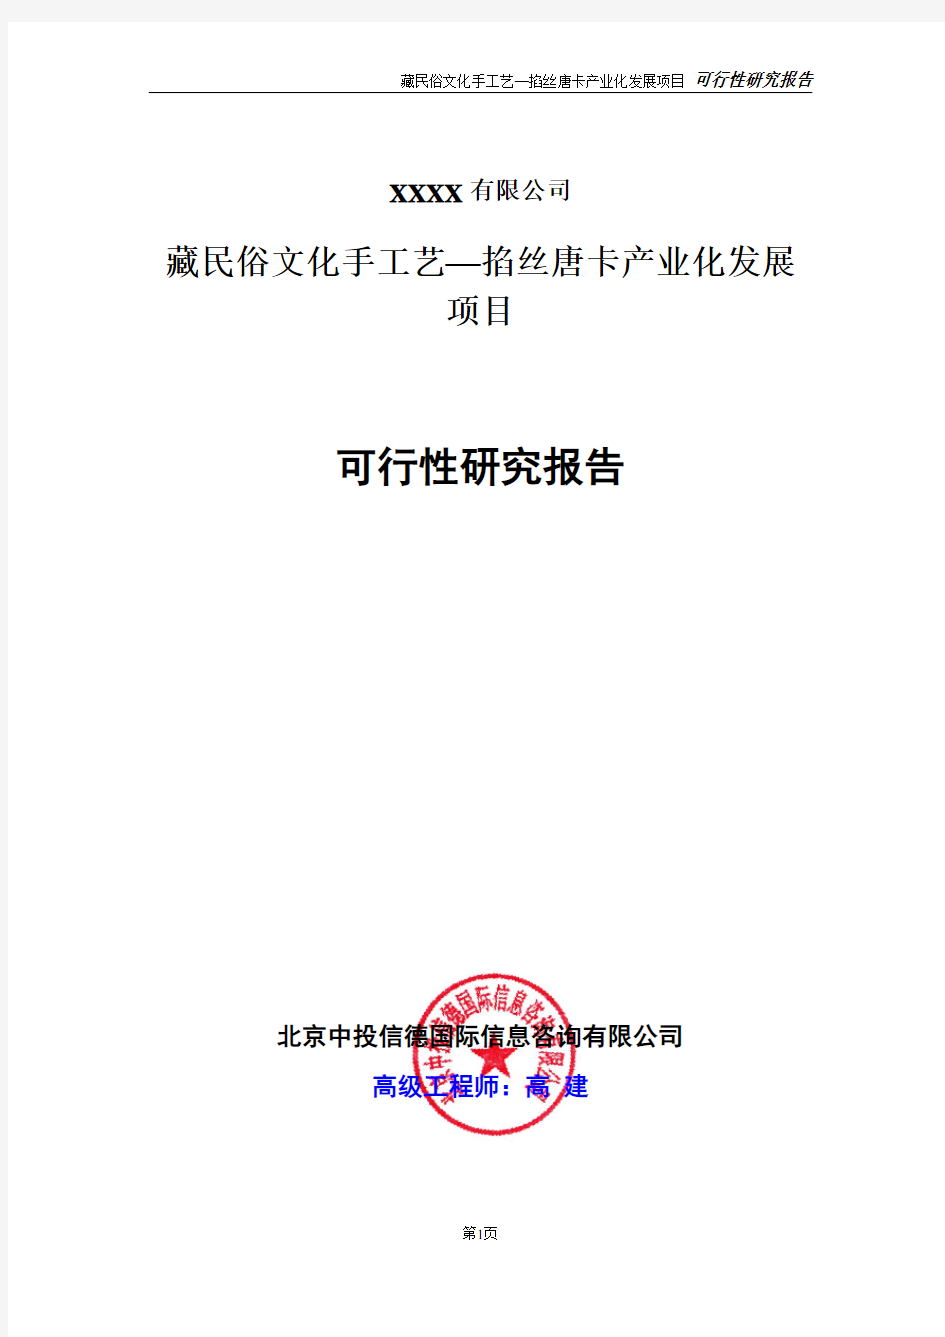 藏民俗文化手工艺—掐丝唐卡产业化发展项目可行性研究报告